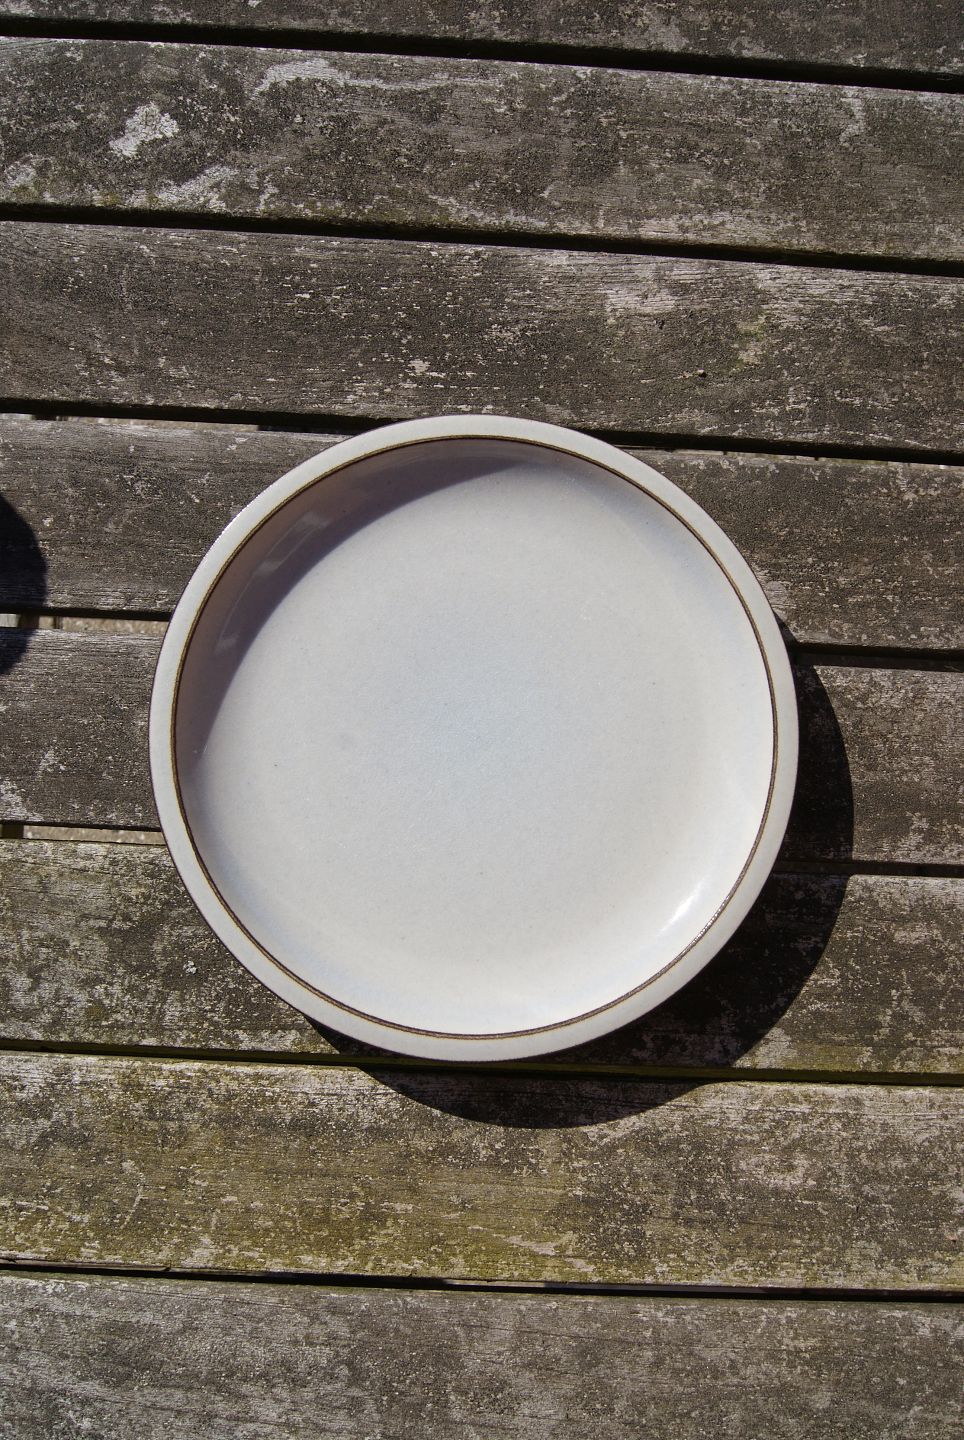 uddybe protein Glat Antikkram - Colombia Danish stoneware service by B&G, large cake plates 19cm